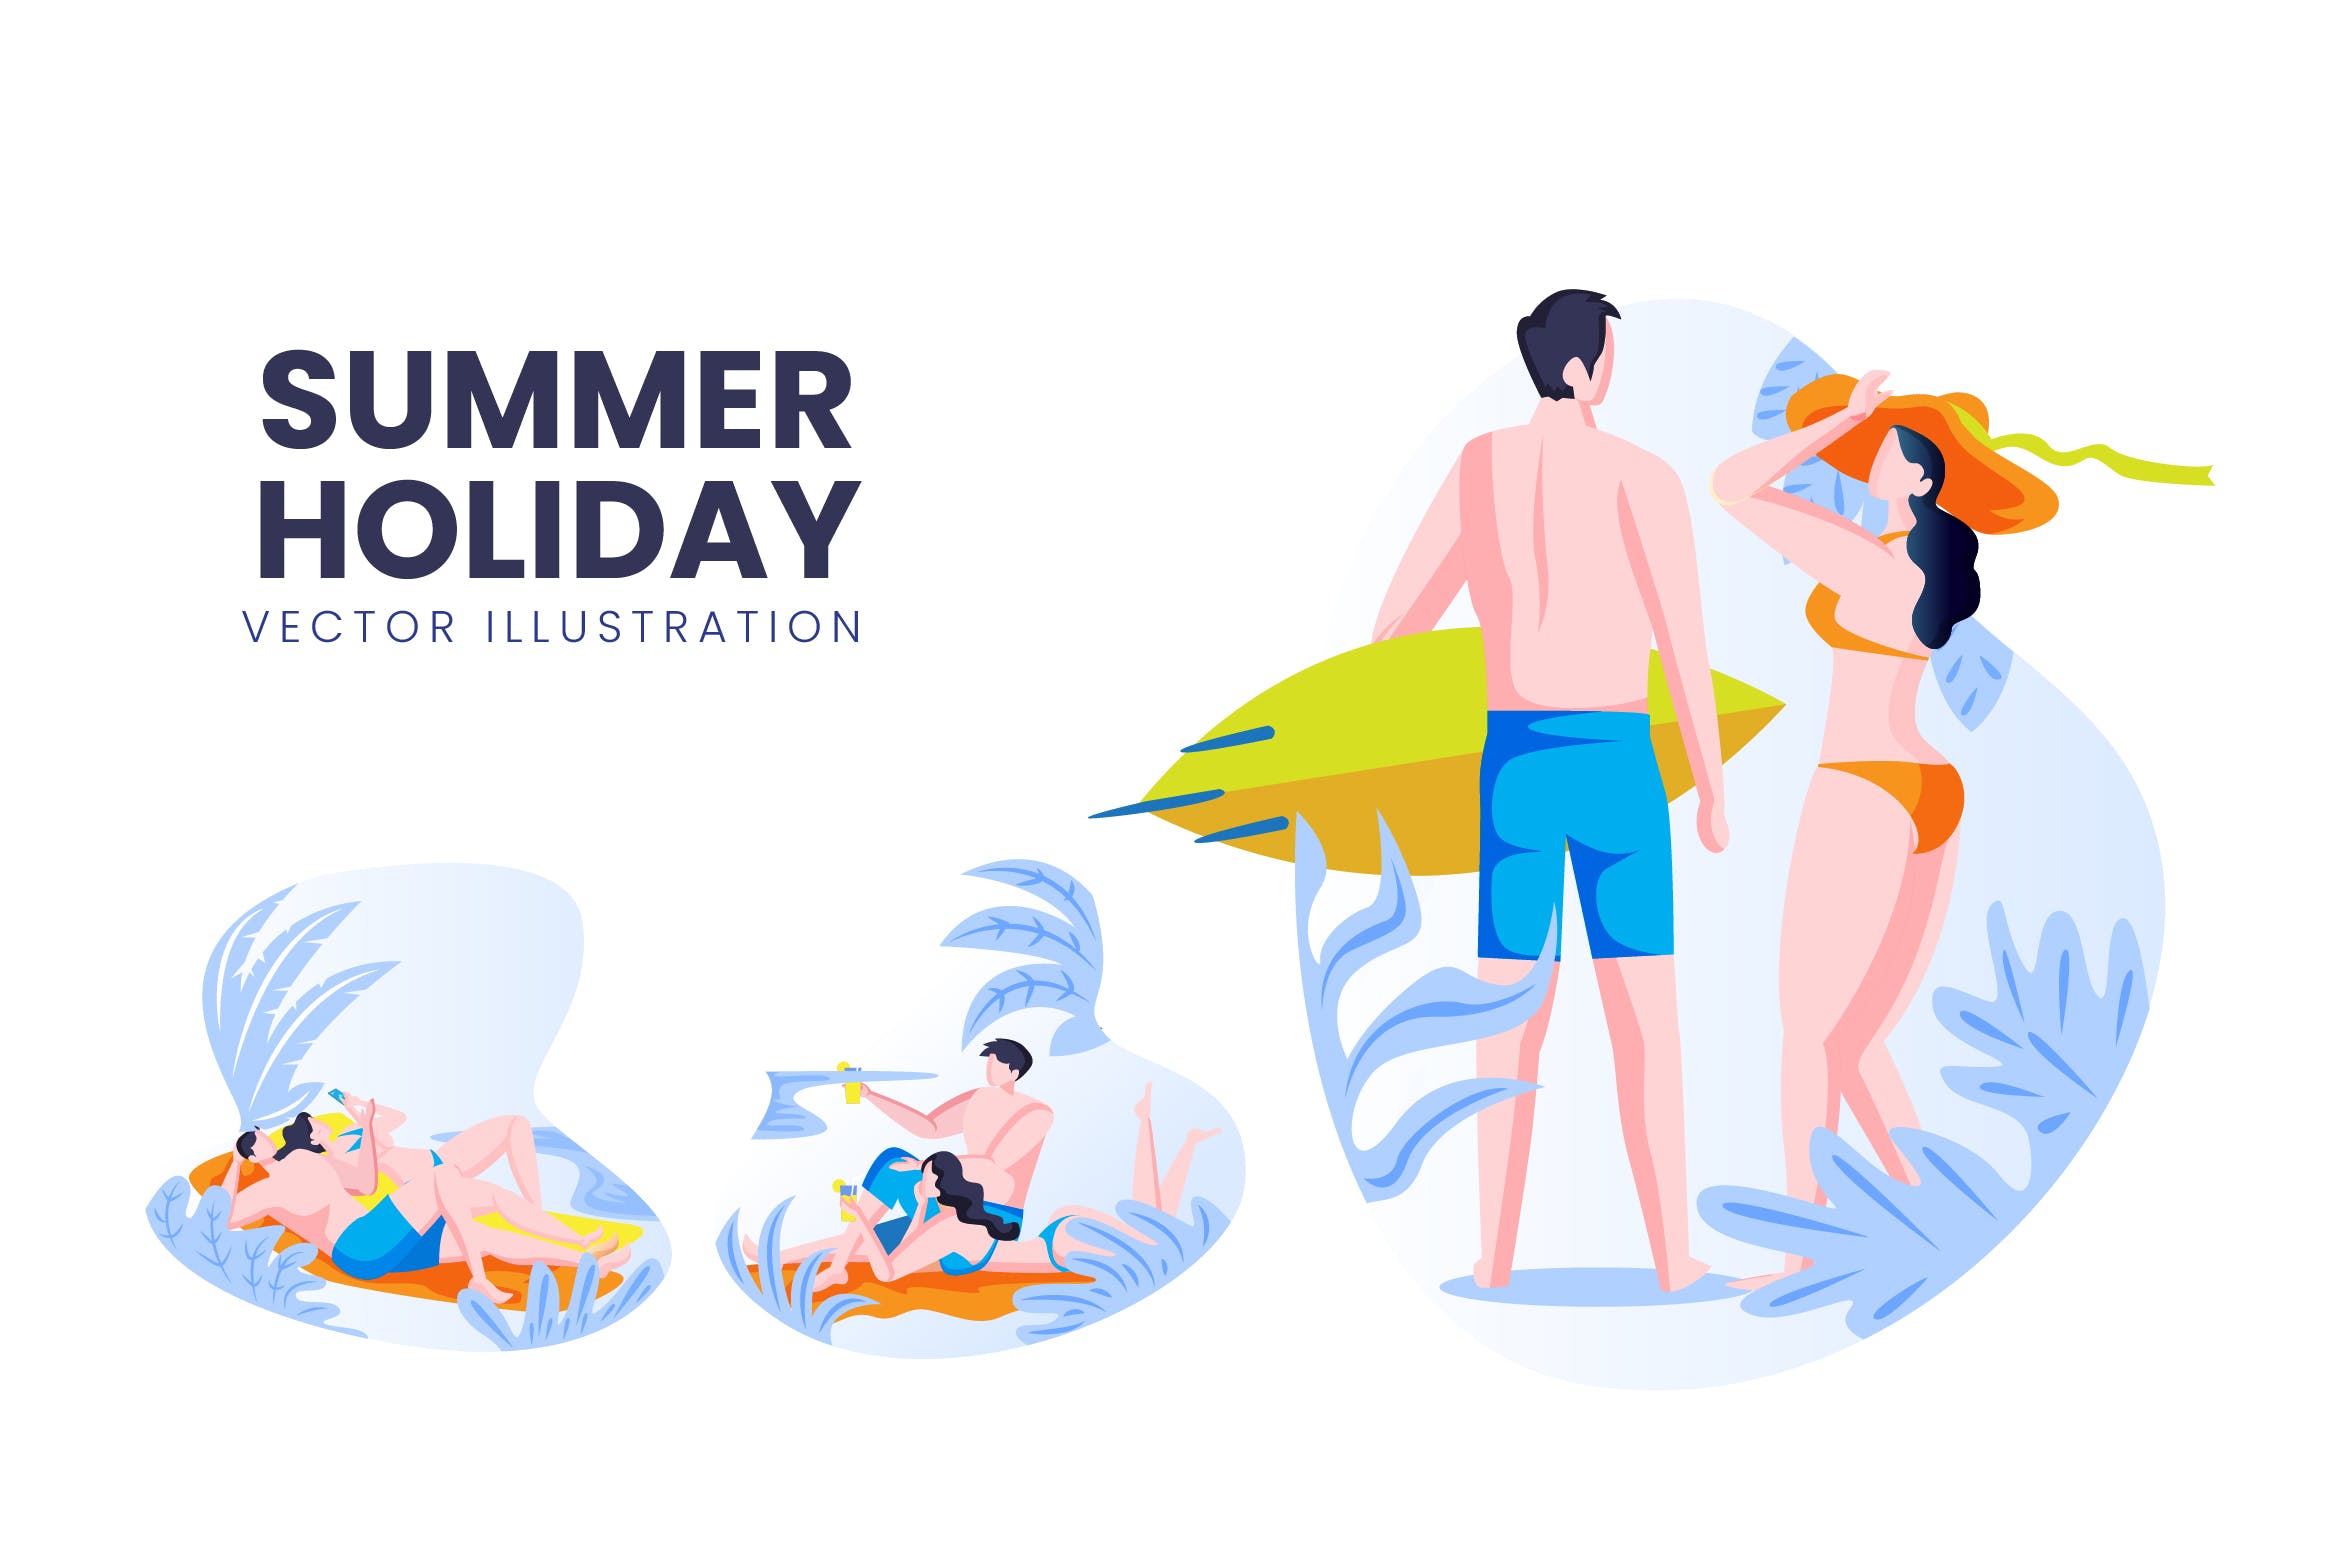 海滩度假主题人物形象16图库精选手绘插画矢量素材 Summer Holiday Vector Character Set插图